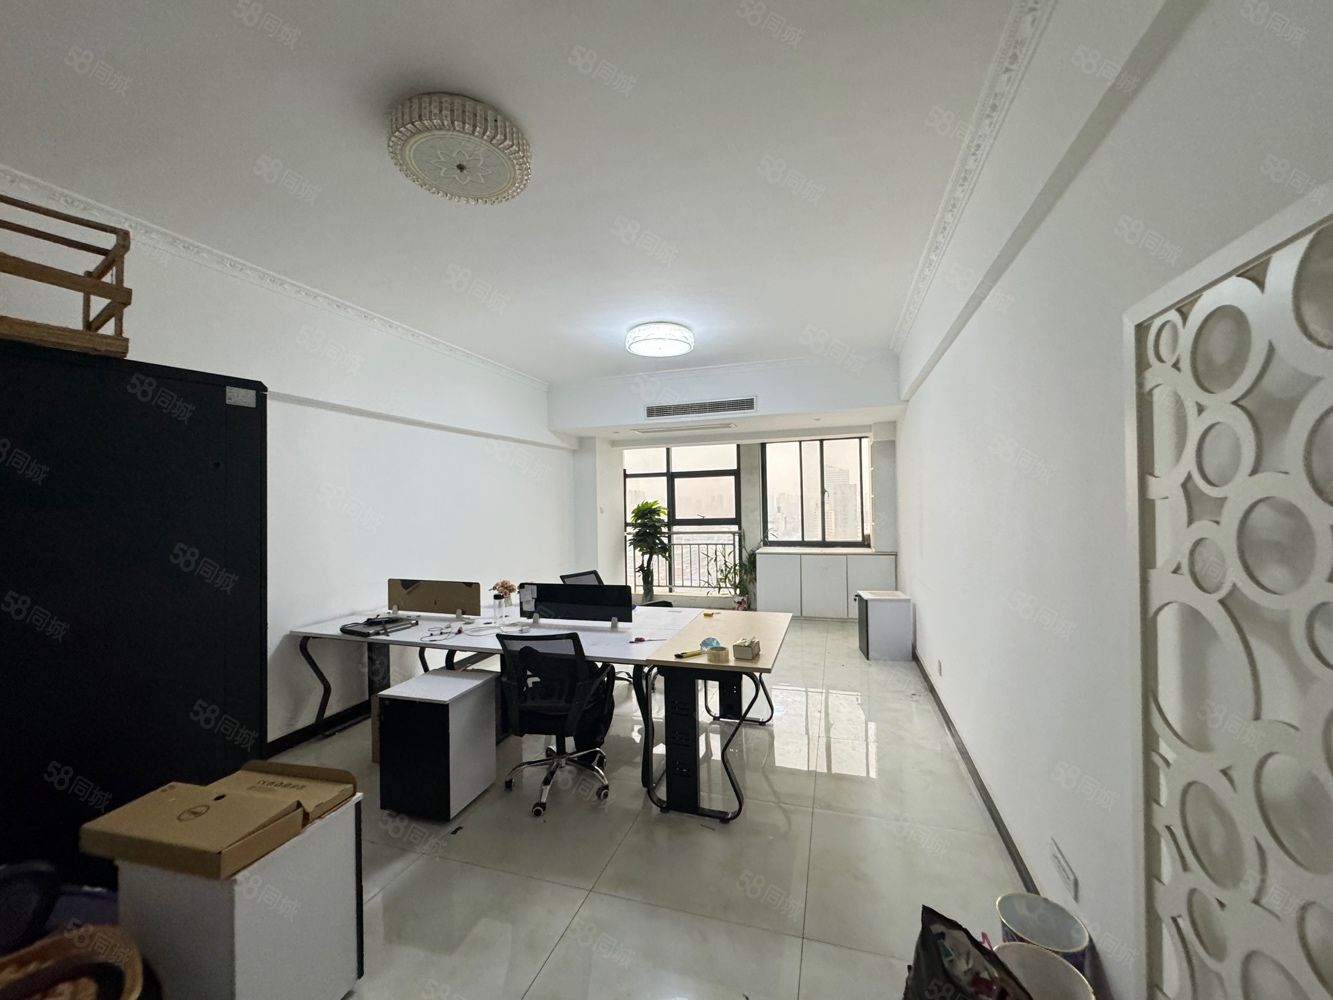 居然之家(豪润风尚国际)A座 精装修一室办公 带地暖空调